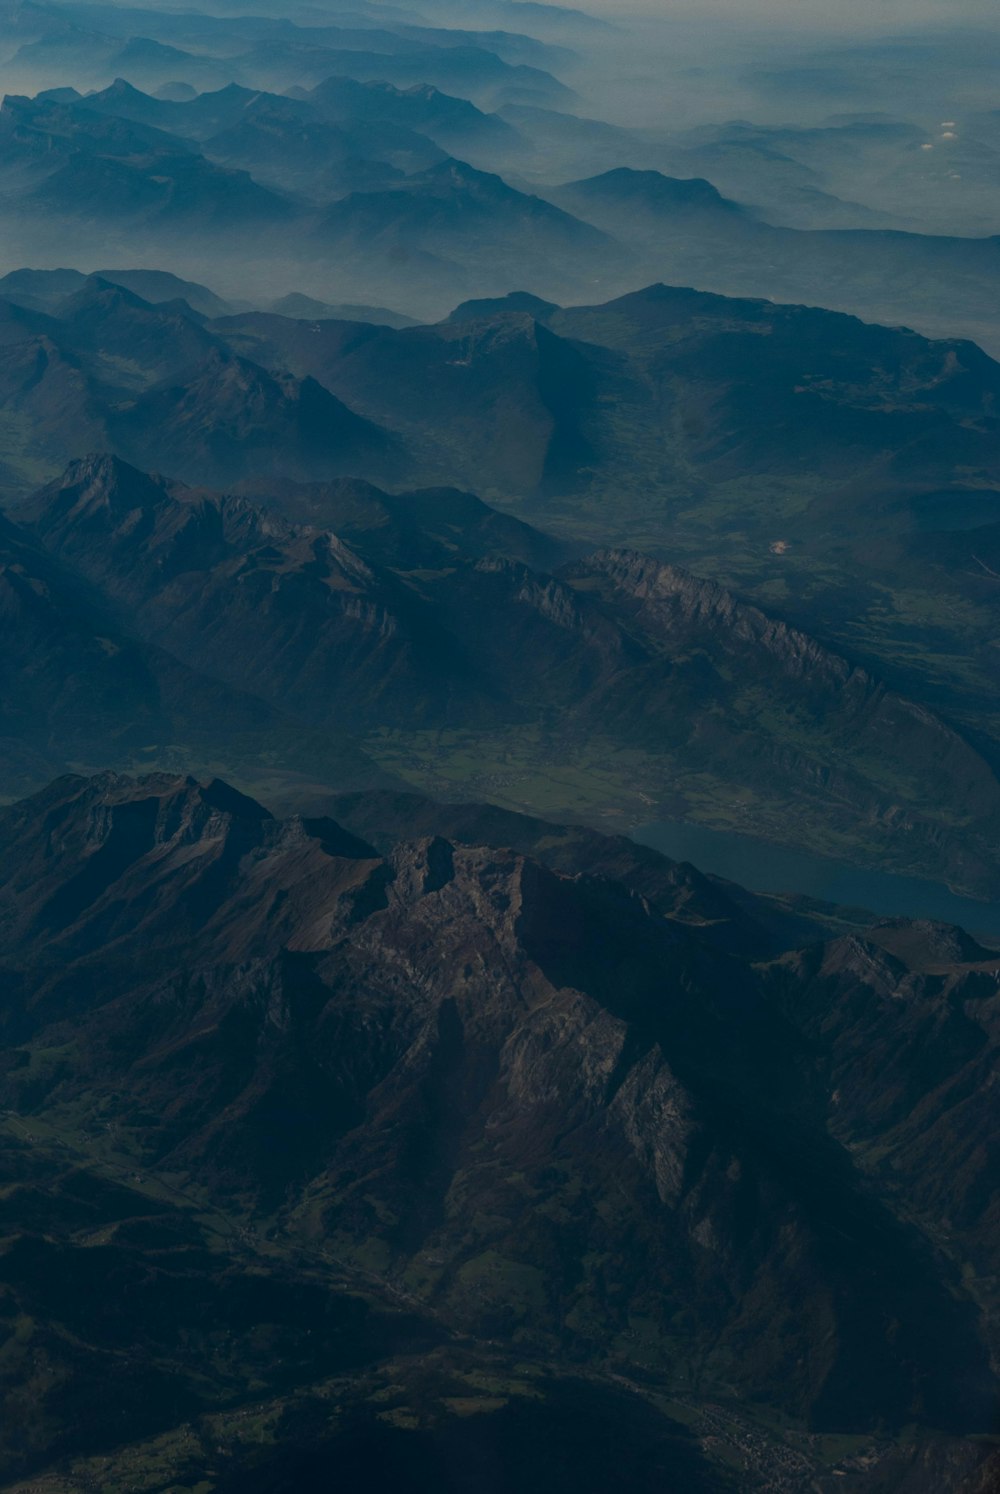 landscape photograph of mountain ranges